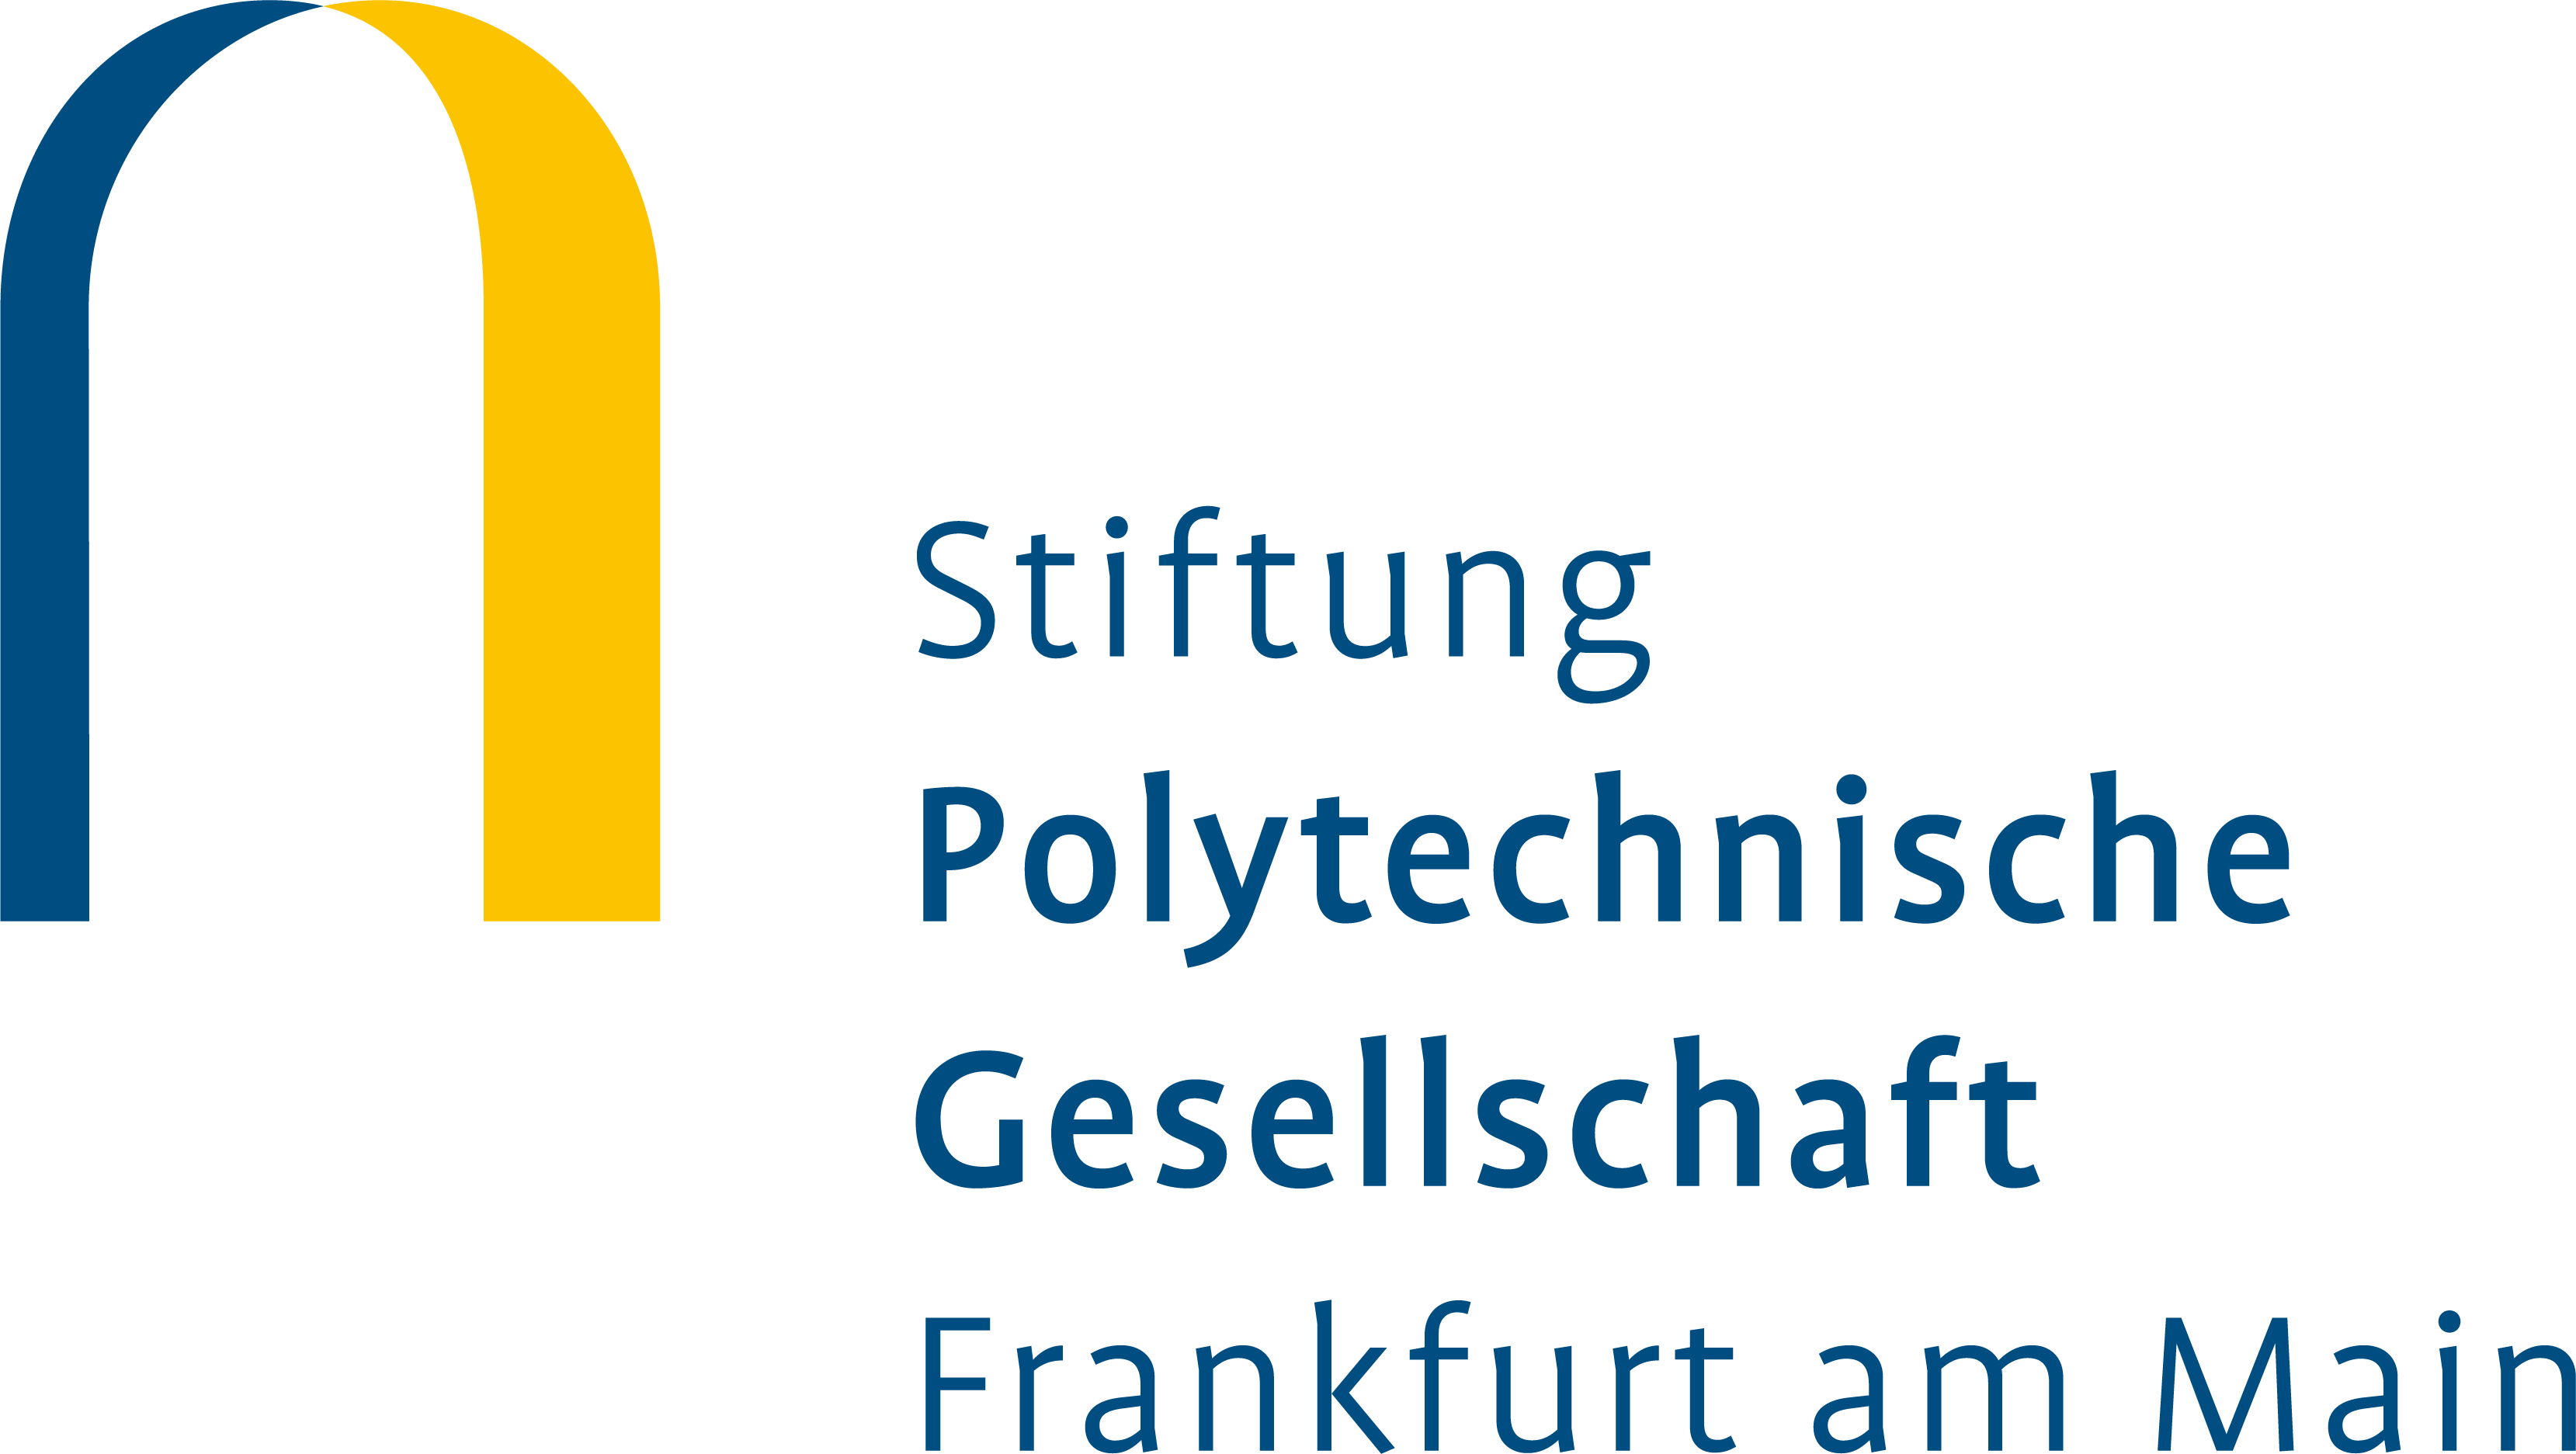 Das Logo der Stiftung Polytechnische Gesellschaft Frankfurt am Main. Es handelt sich um eine Abstraktion eines Bienenkorbs, ein blauer Bogen links, ein gelber Bogen rechts. Es sieht aus wie ein umgedrehtes "U".